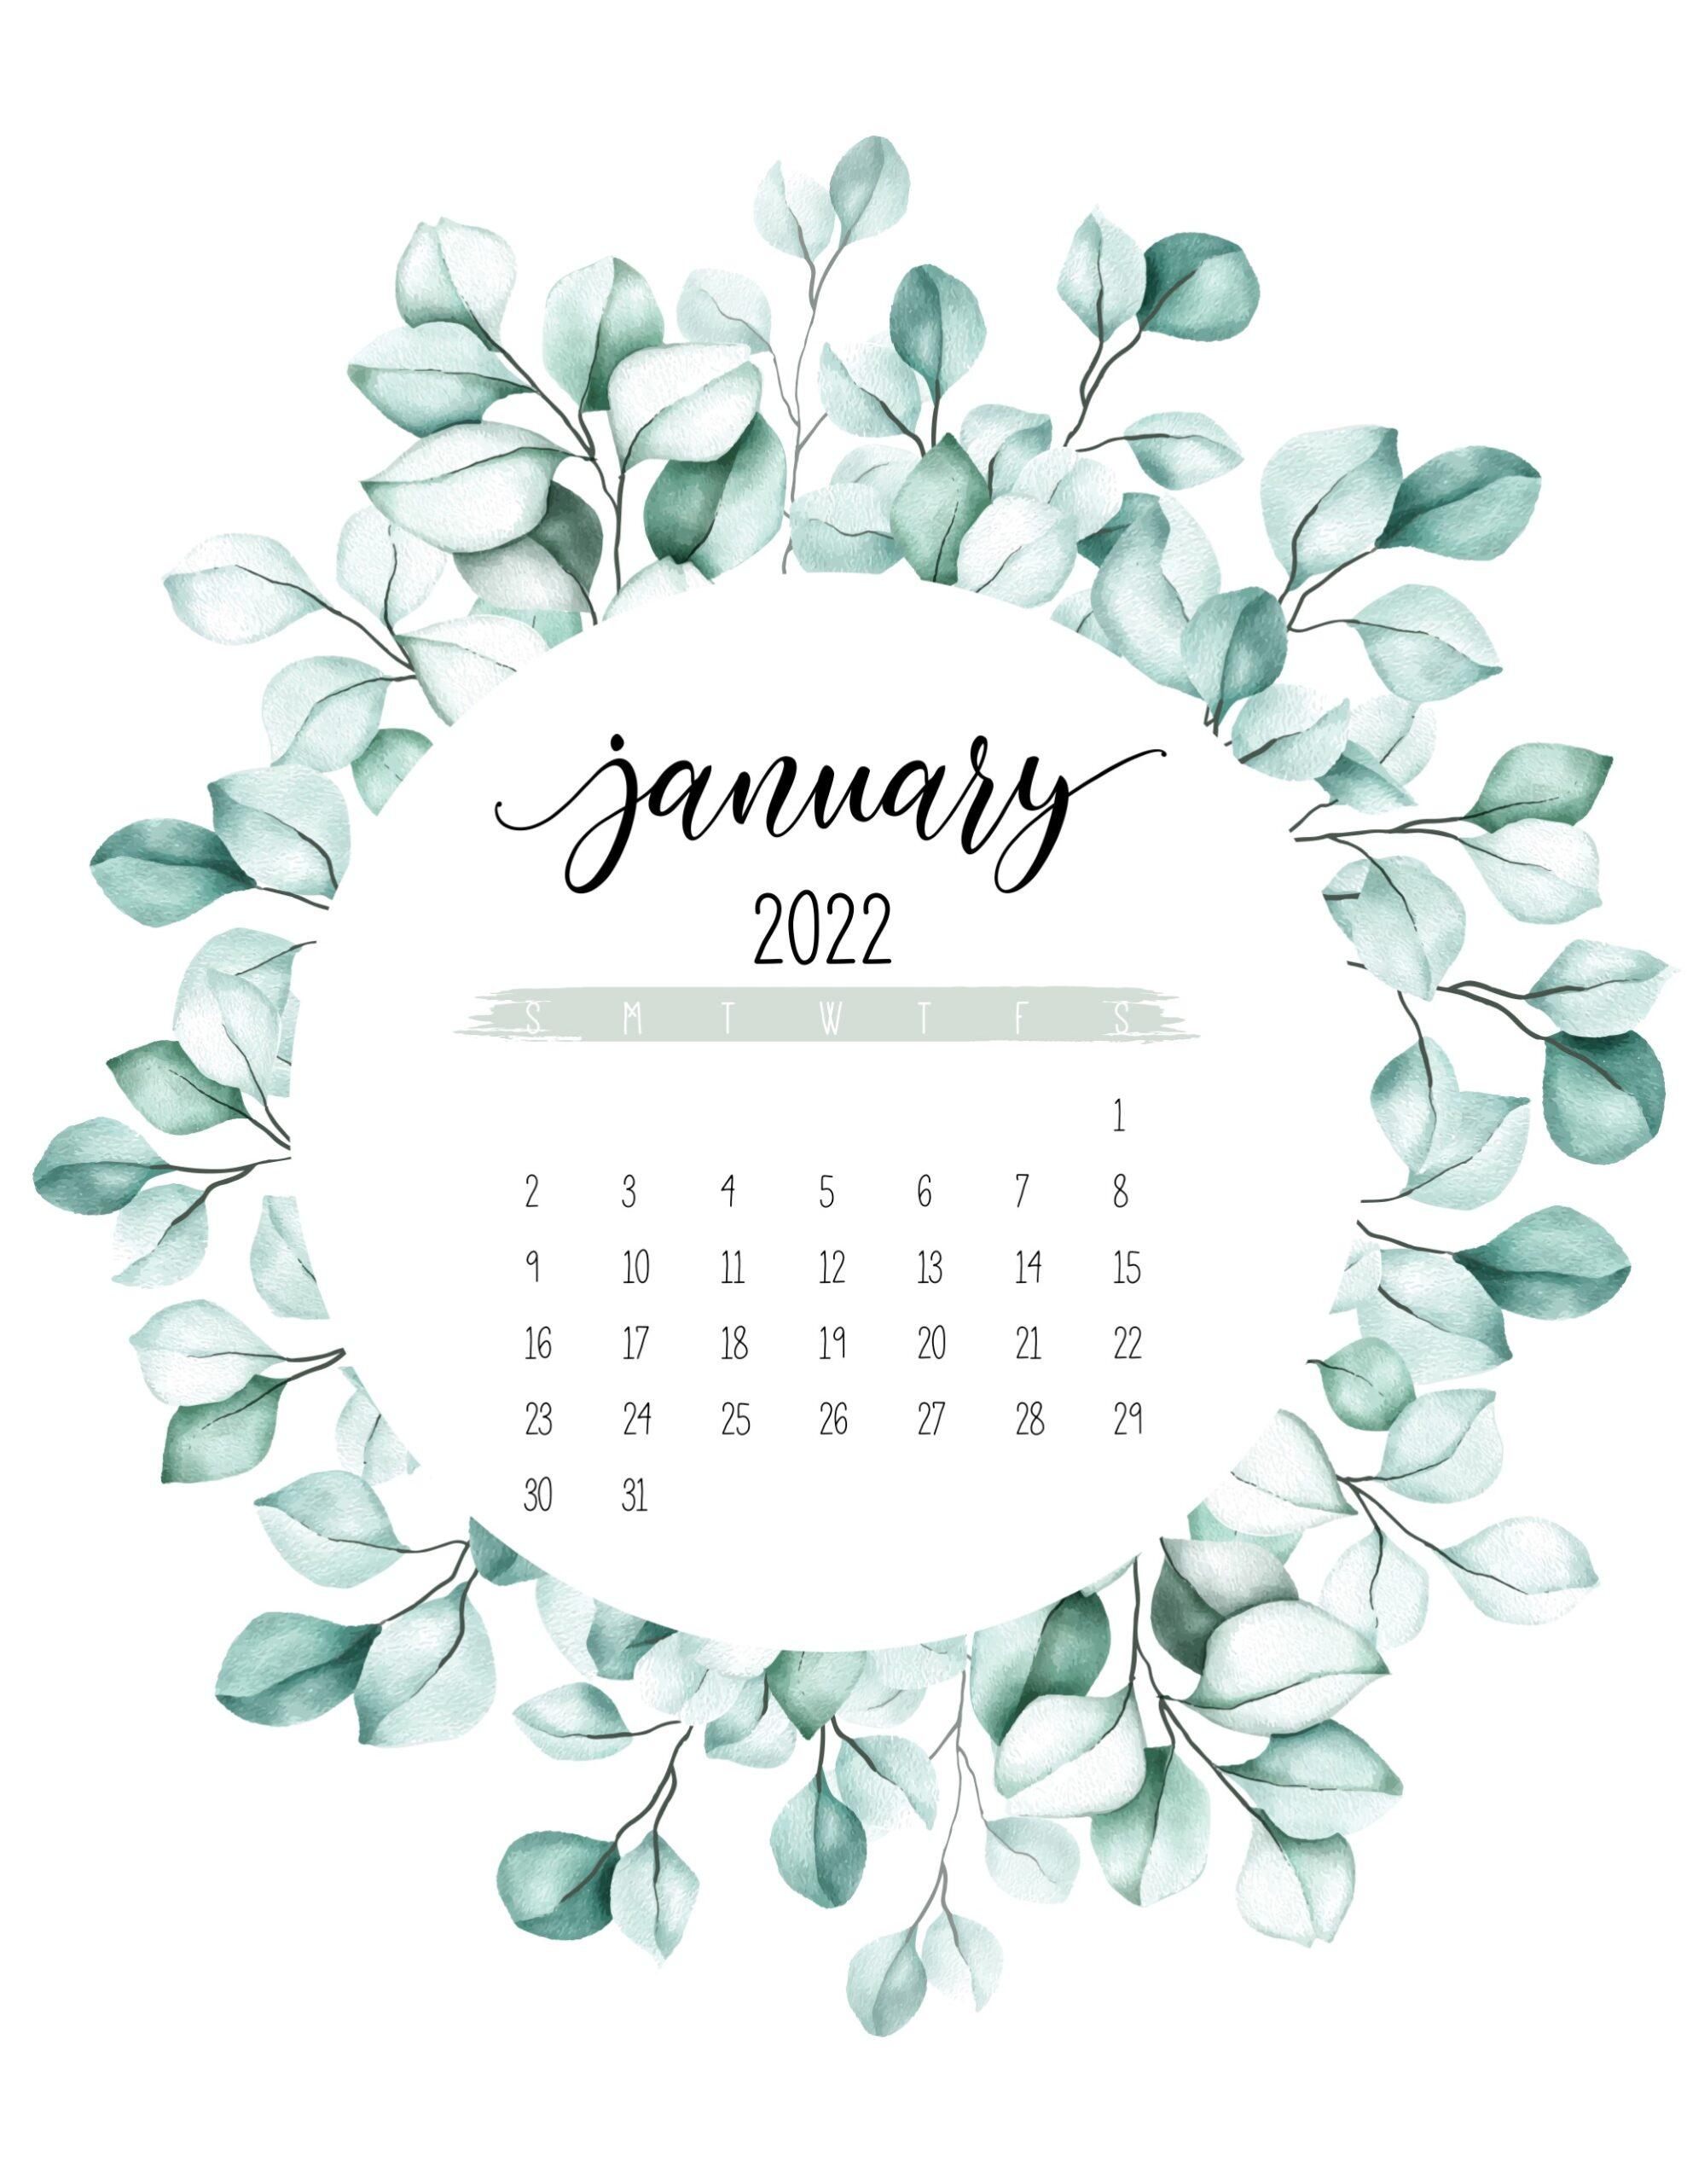 January 2022 Calendar Wallpaper Ipad.January 2022 Calendar Wallpapers Top Free January 2022 Calendar Backgrounds Wallpaperaccess